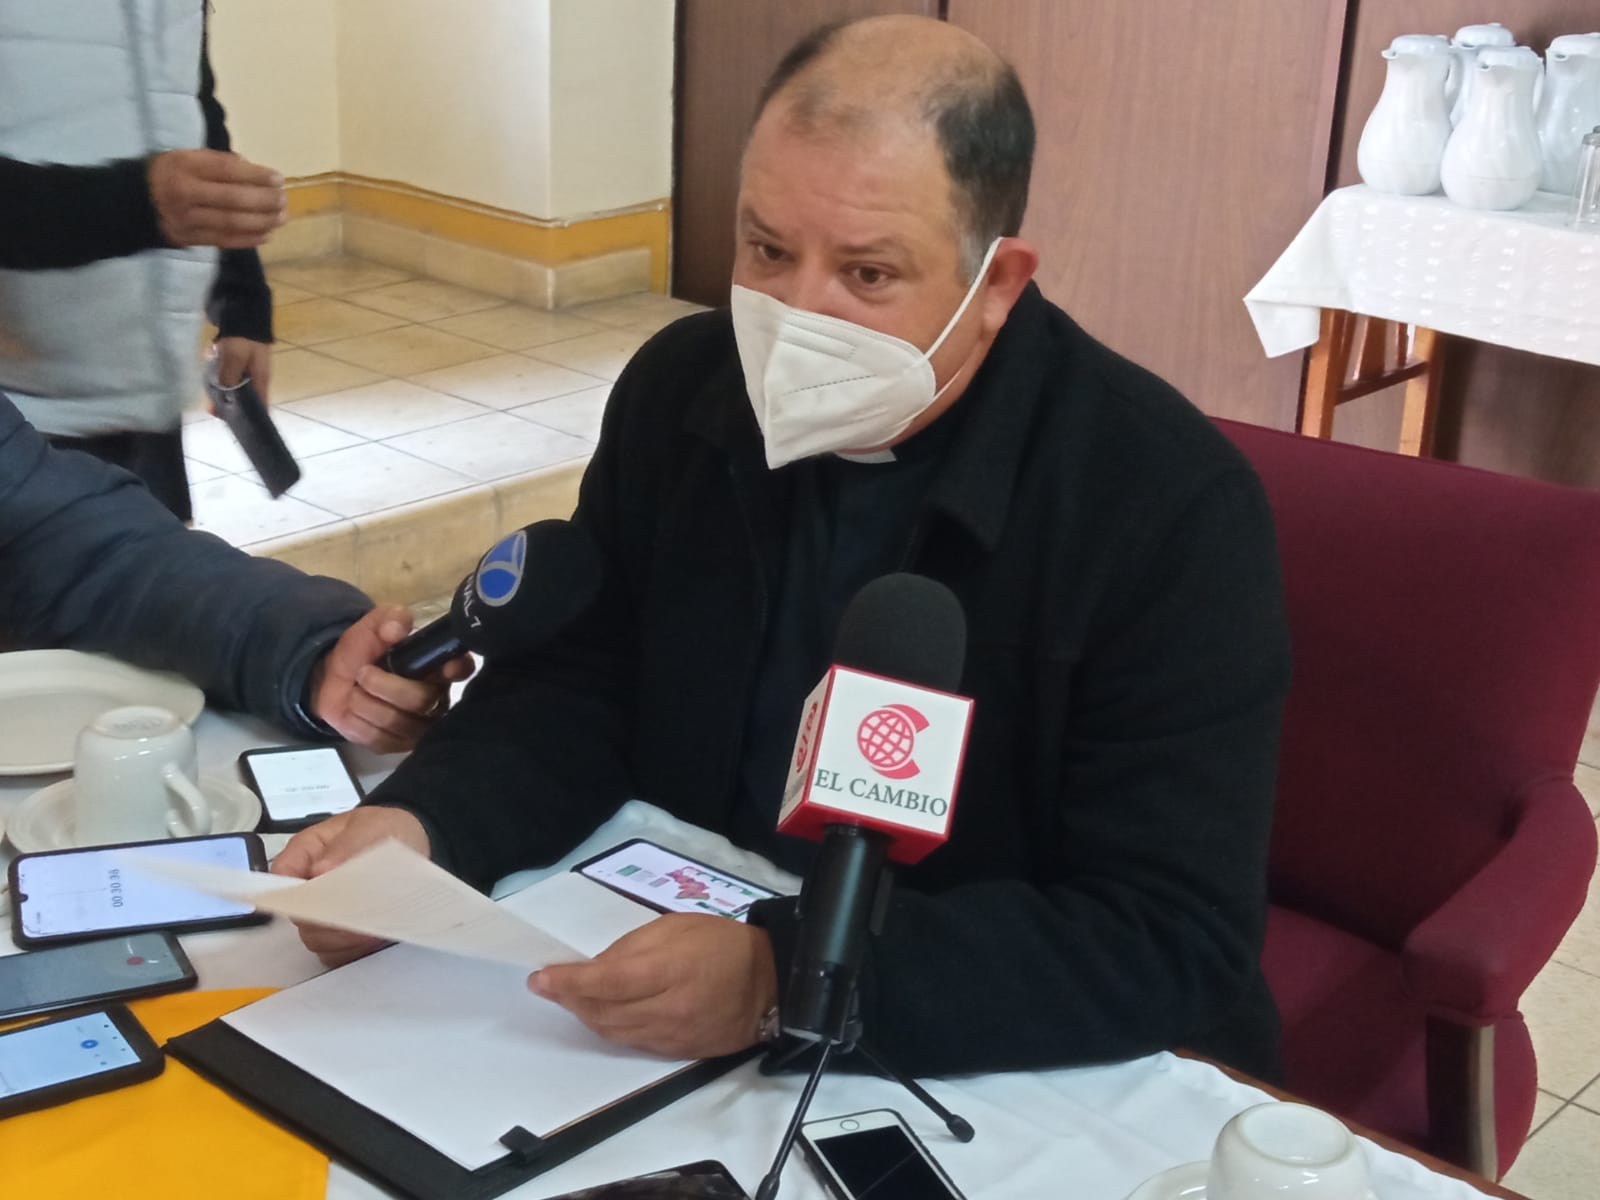 Periodistas son prácticamente héroes nacionales, dice vocero del Arzobispado de SLP